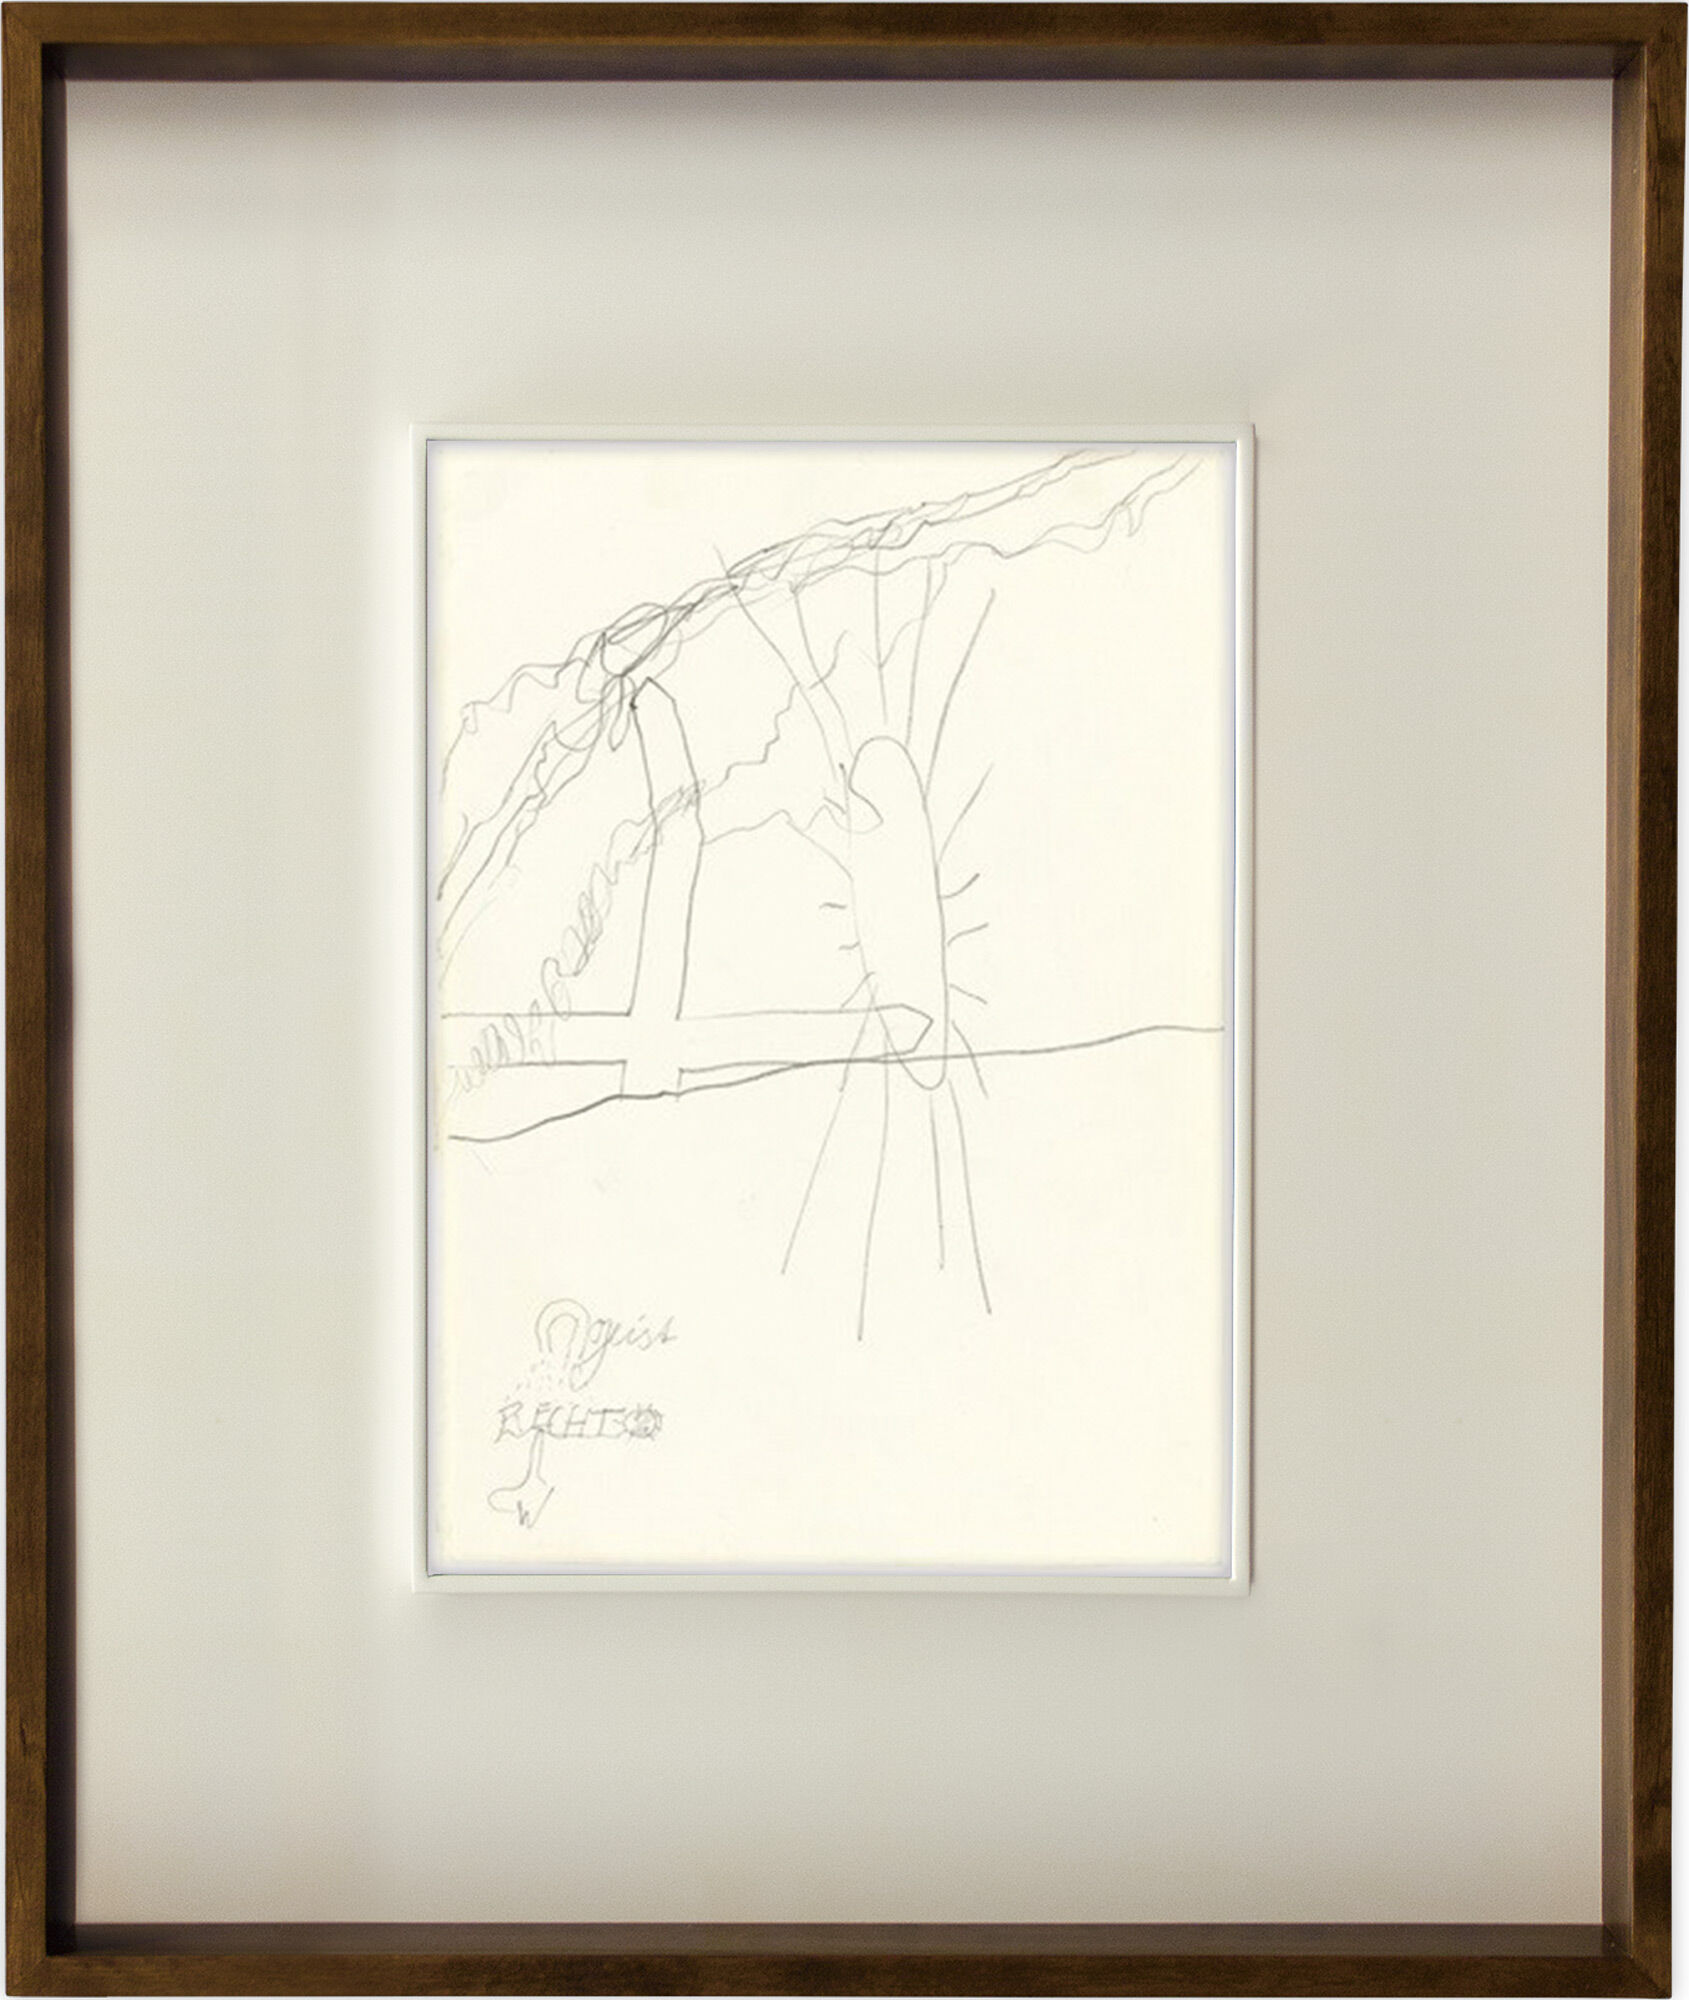 Picture "Vision" (1968) (Unique piece) by Joseph Beuys